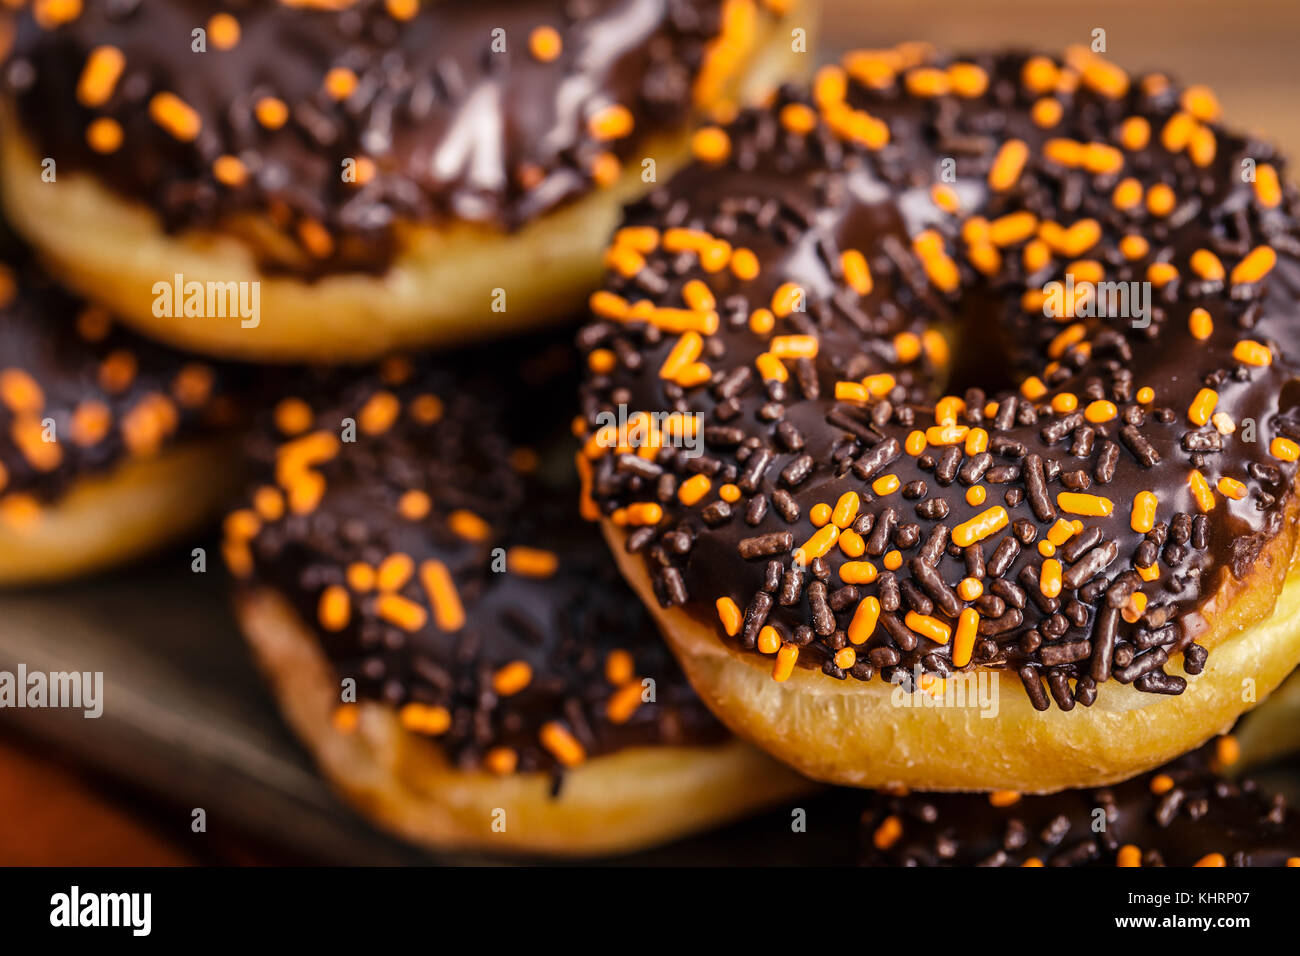 Donuts de chocolate Fripan Dots blanco y negro - Panadería y Pastelería -  Donuts de chocolate